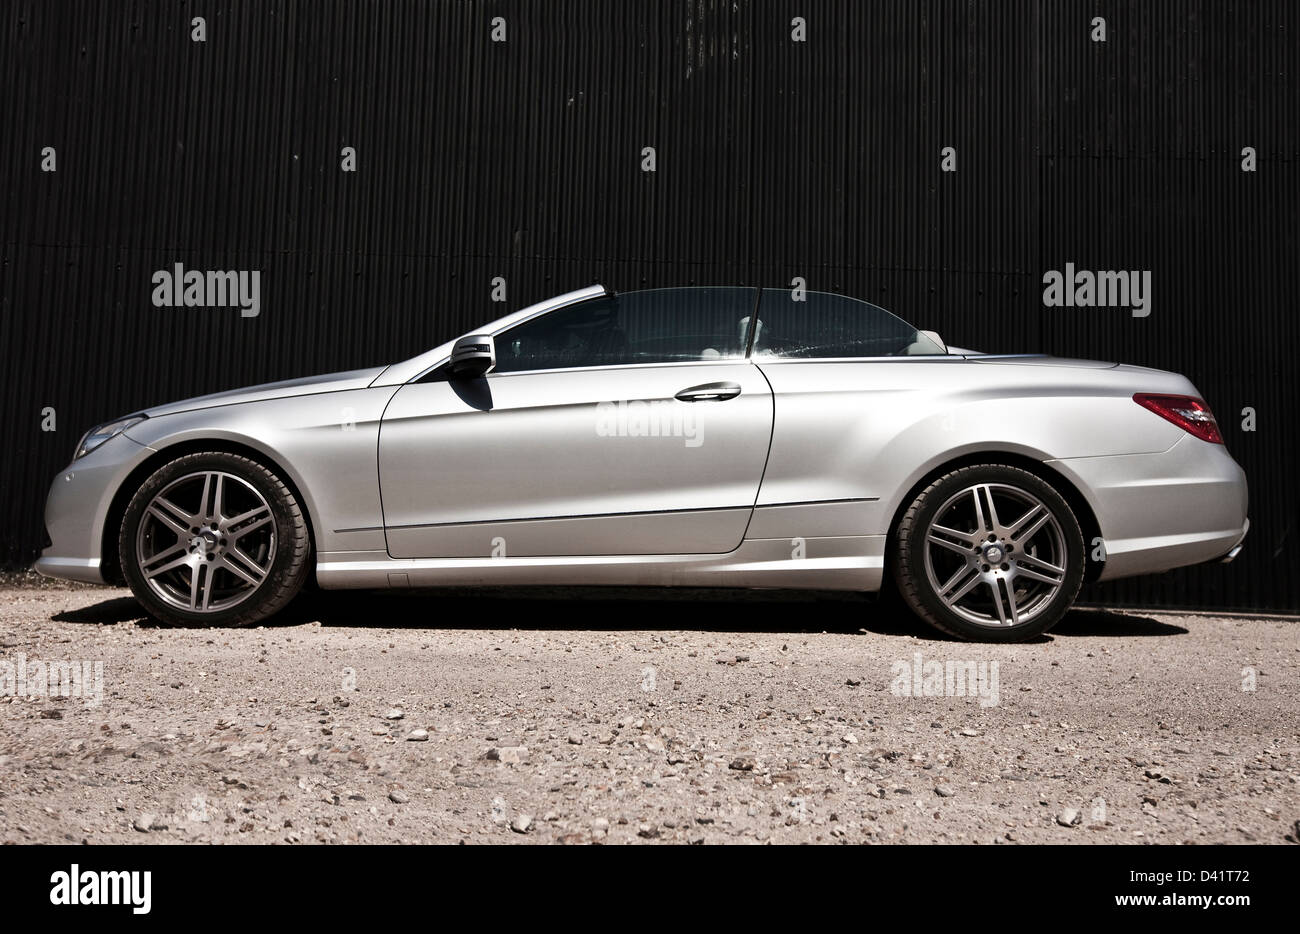 Mercedes E Class Stockfotos und -bilder Kaufen - Alamy